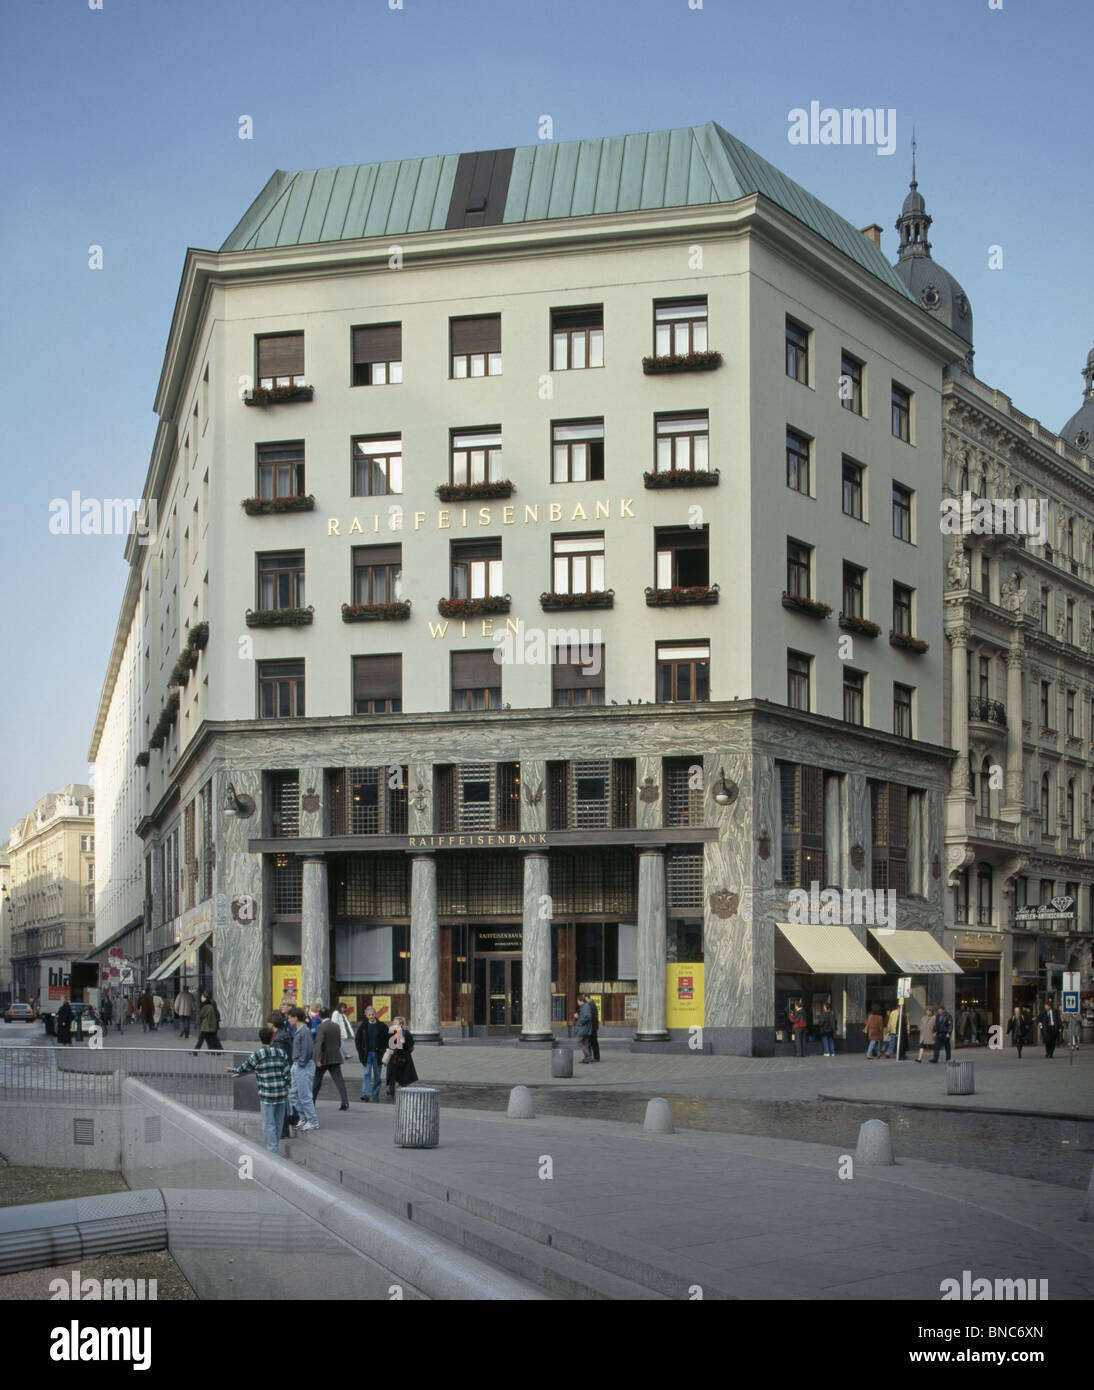 Loos Haus Michaelerplatz, Wien, Österreich. Von Adolf Loos 1910. früher das Goldman-Haus jetzt die Raiffeisenbank. Stockfoto